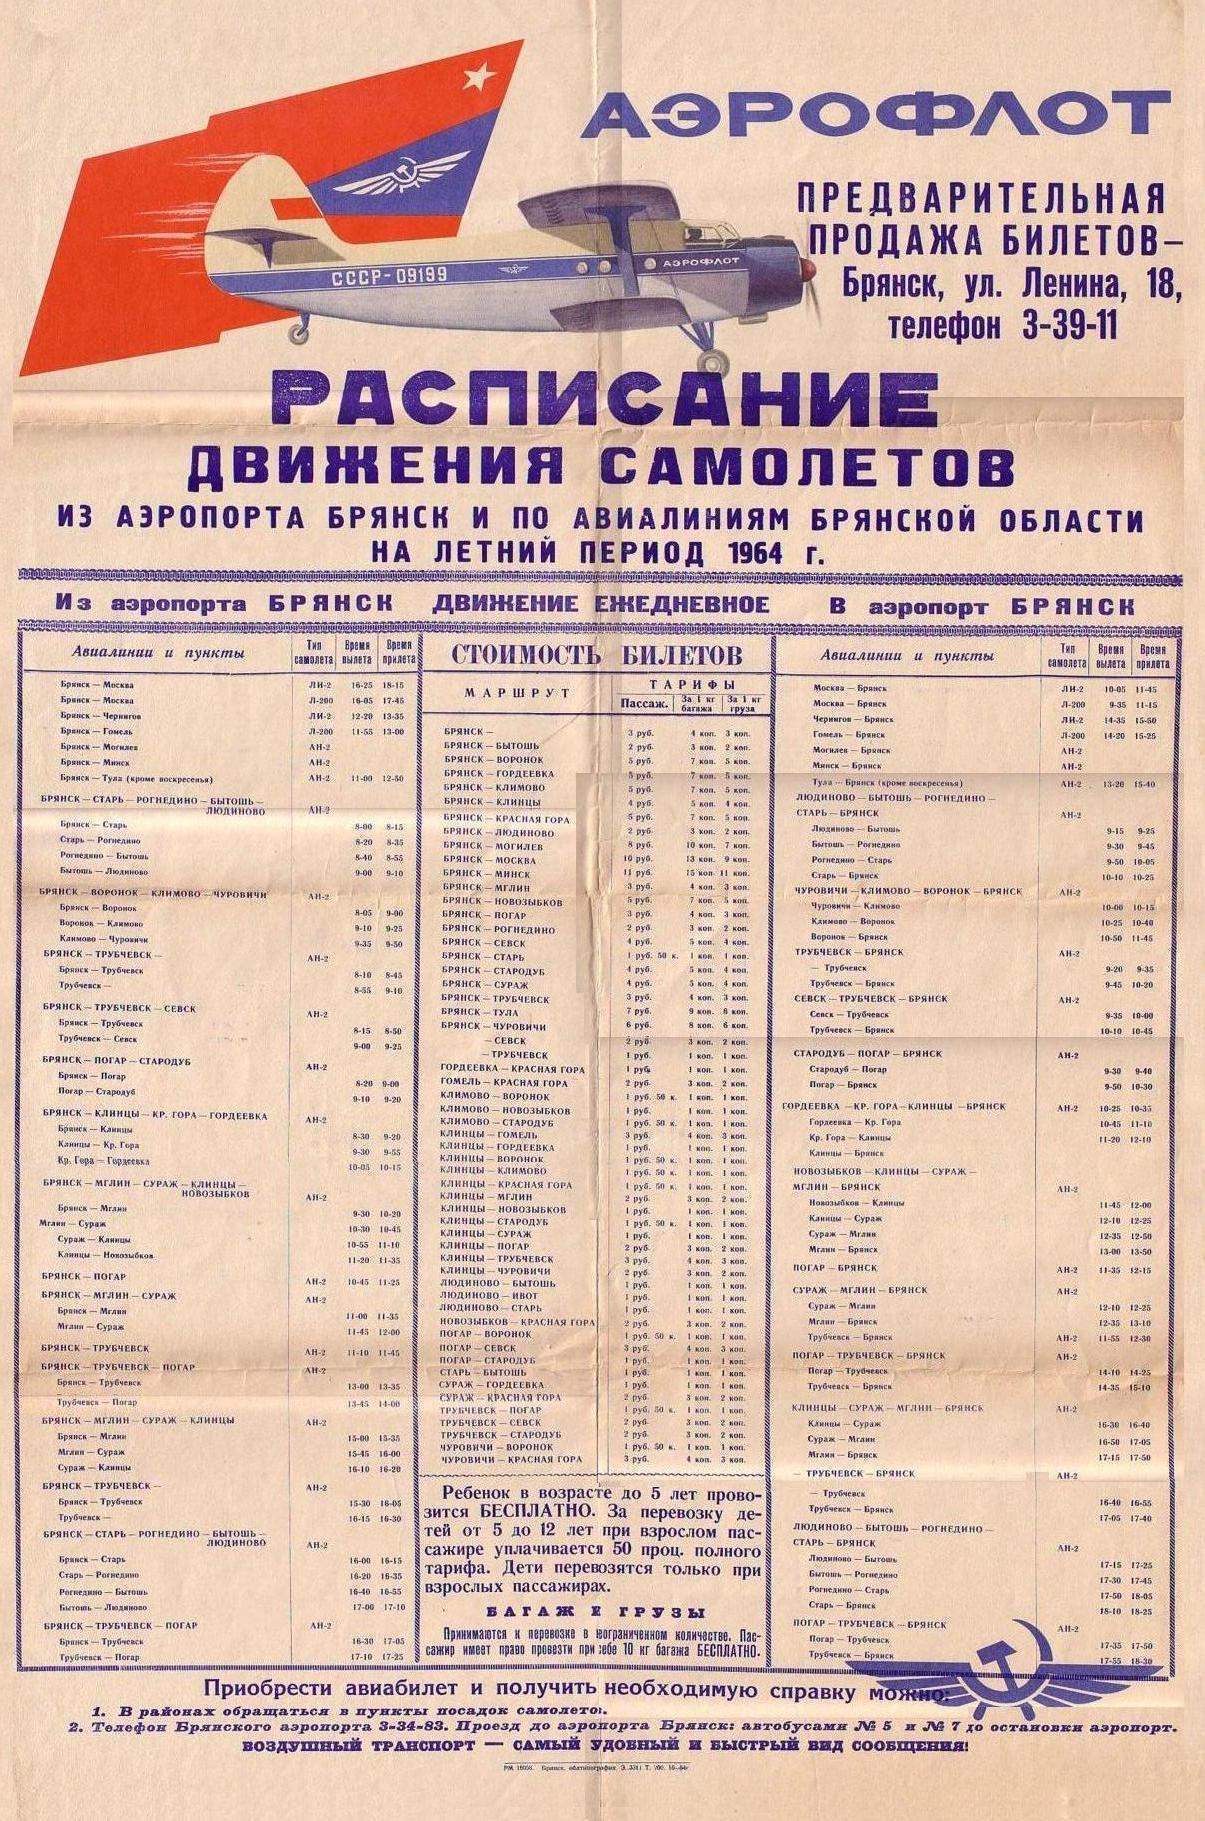 Расписание движения самолётов из аэропорта Брянск и по авиалиниям Брянской области на летний период 1964 года